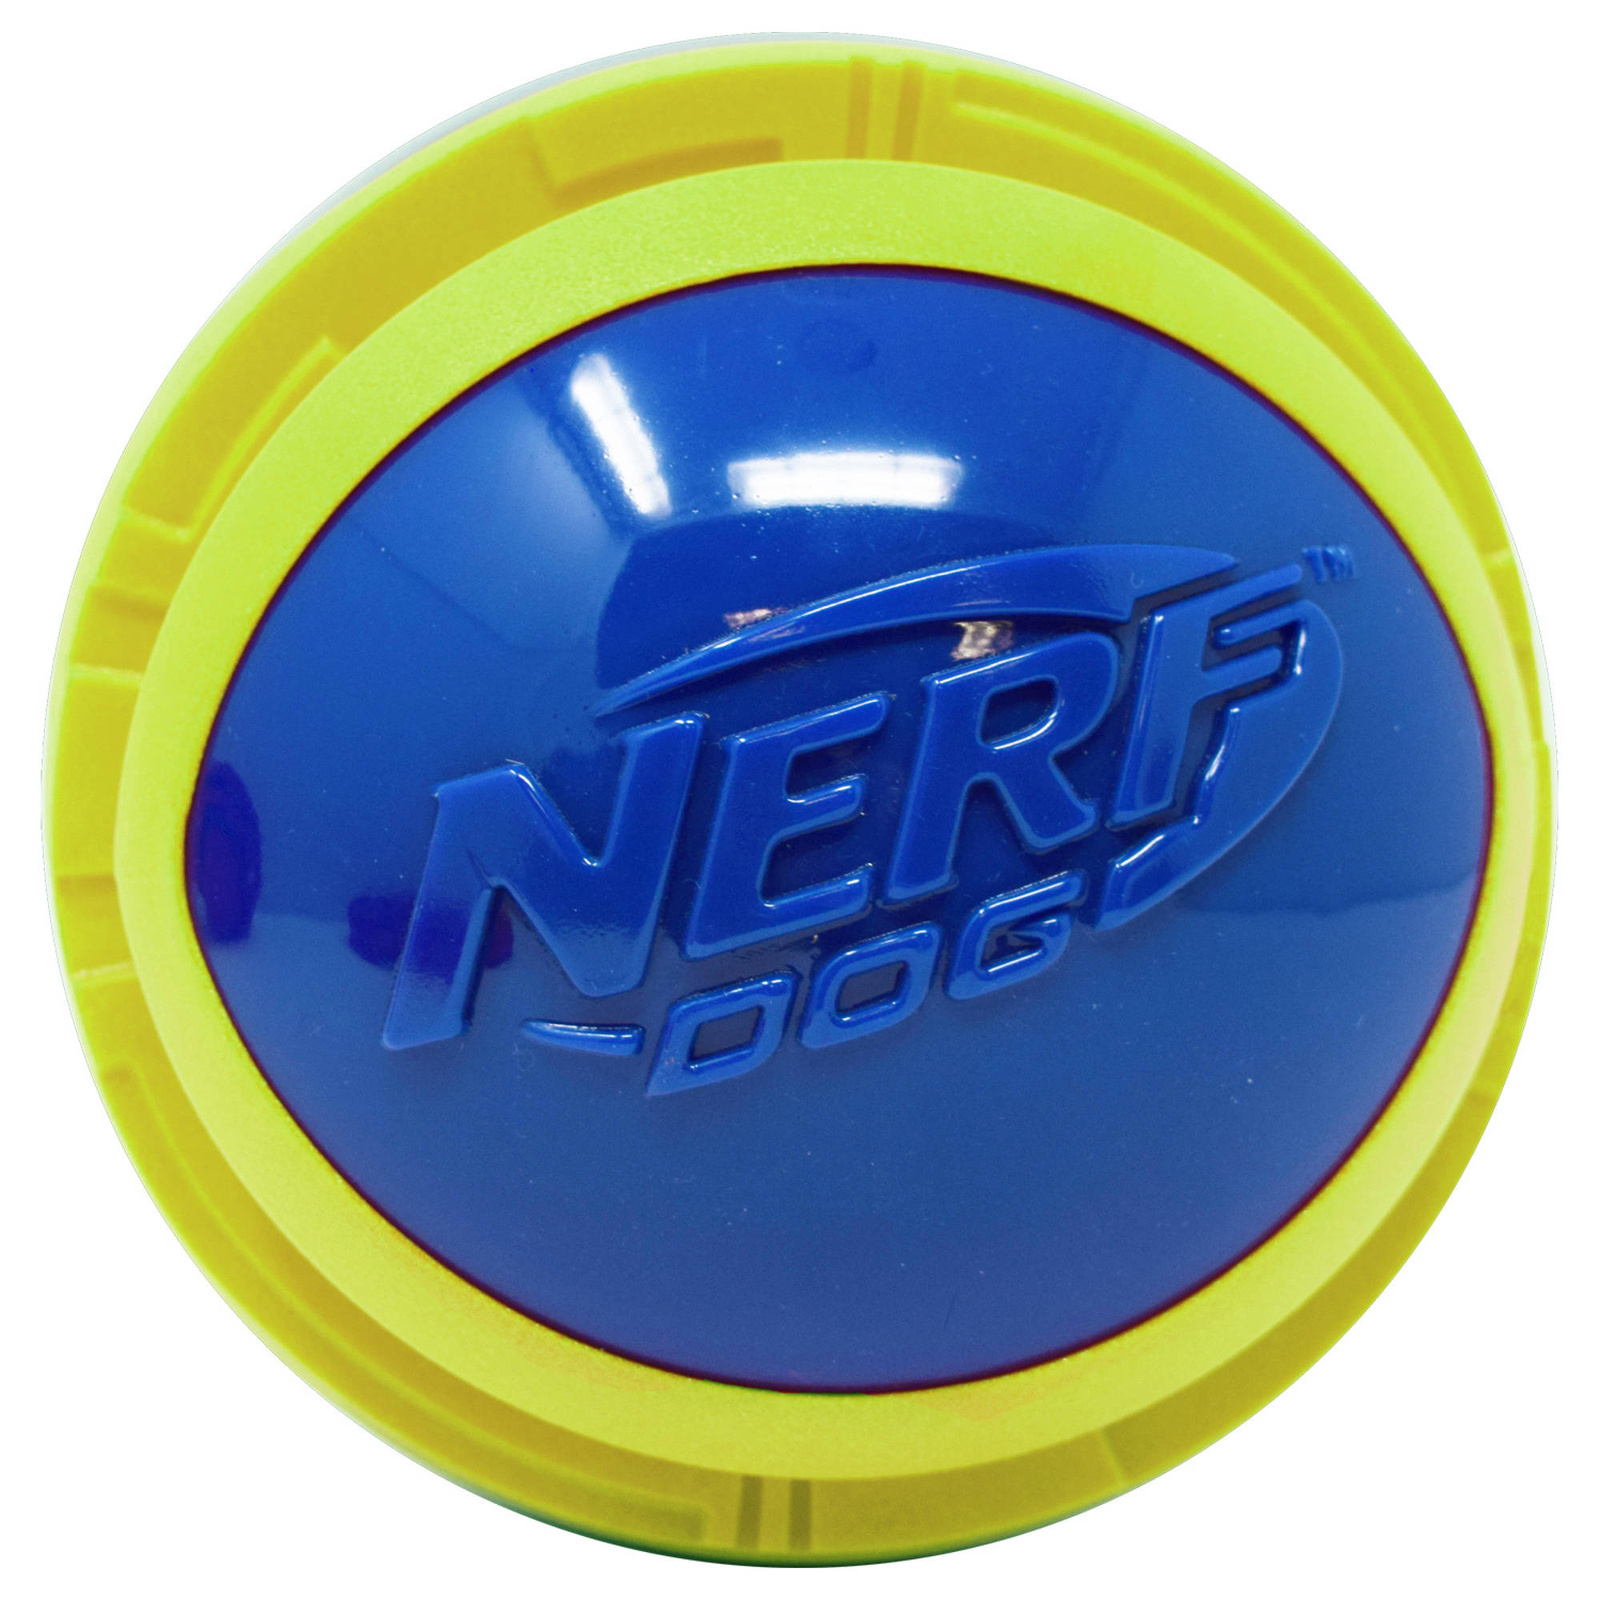 Nerf Nerf мяч из вспененной резины и термопластичной резины,14 см (серия Мегатон), (синий/зеленый) (390 г) nerf мяч для регби из вспененной резины и нейлона 18 см серия мегатон синийоранжевый 54412 0 263 кг